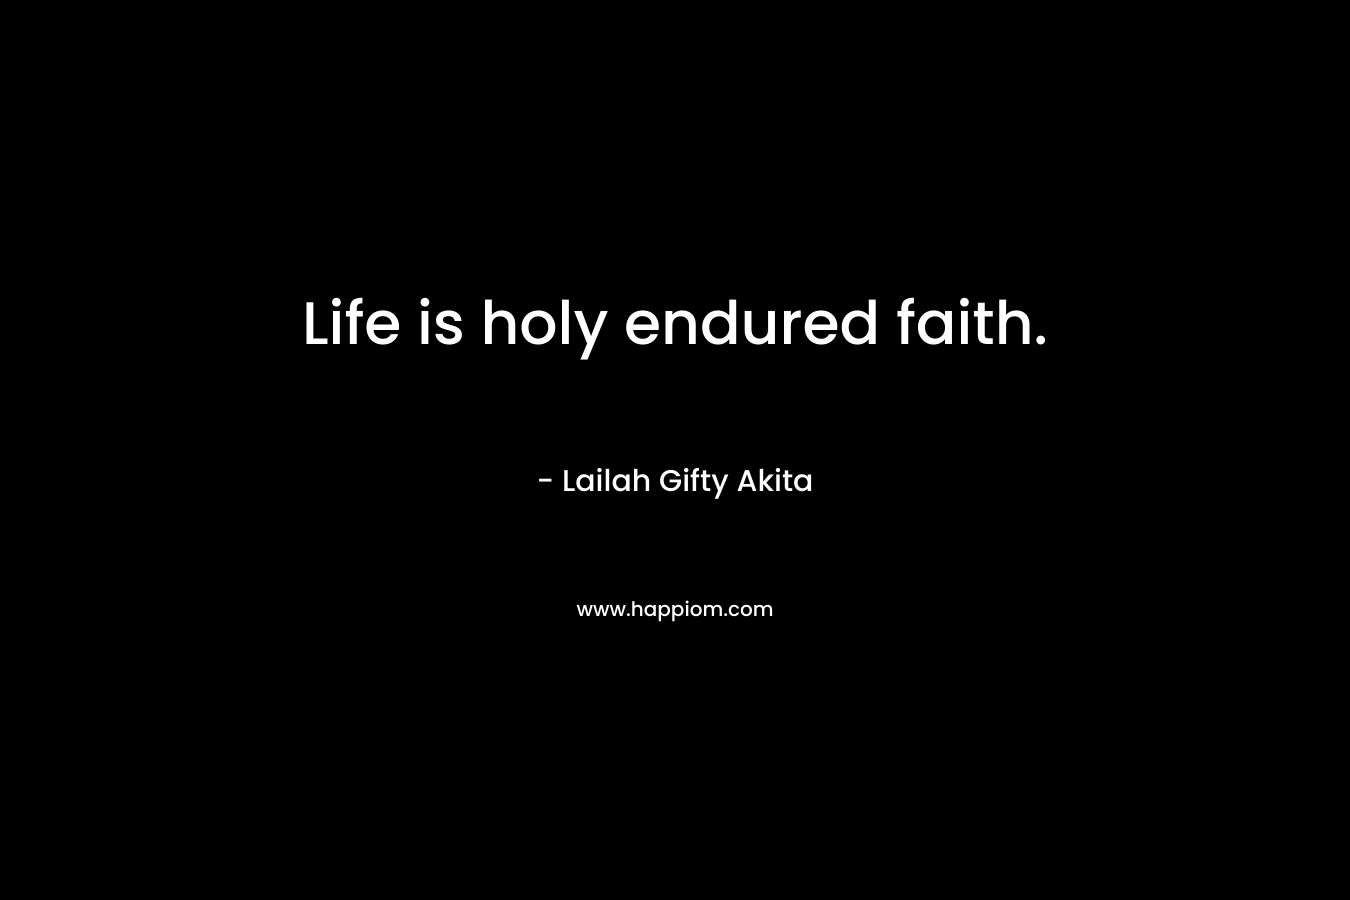 Life is holy endured faith.